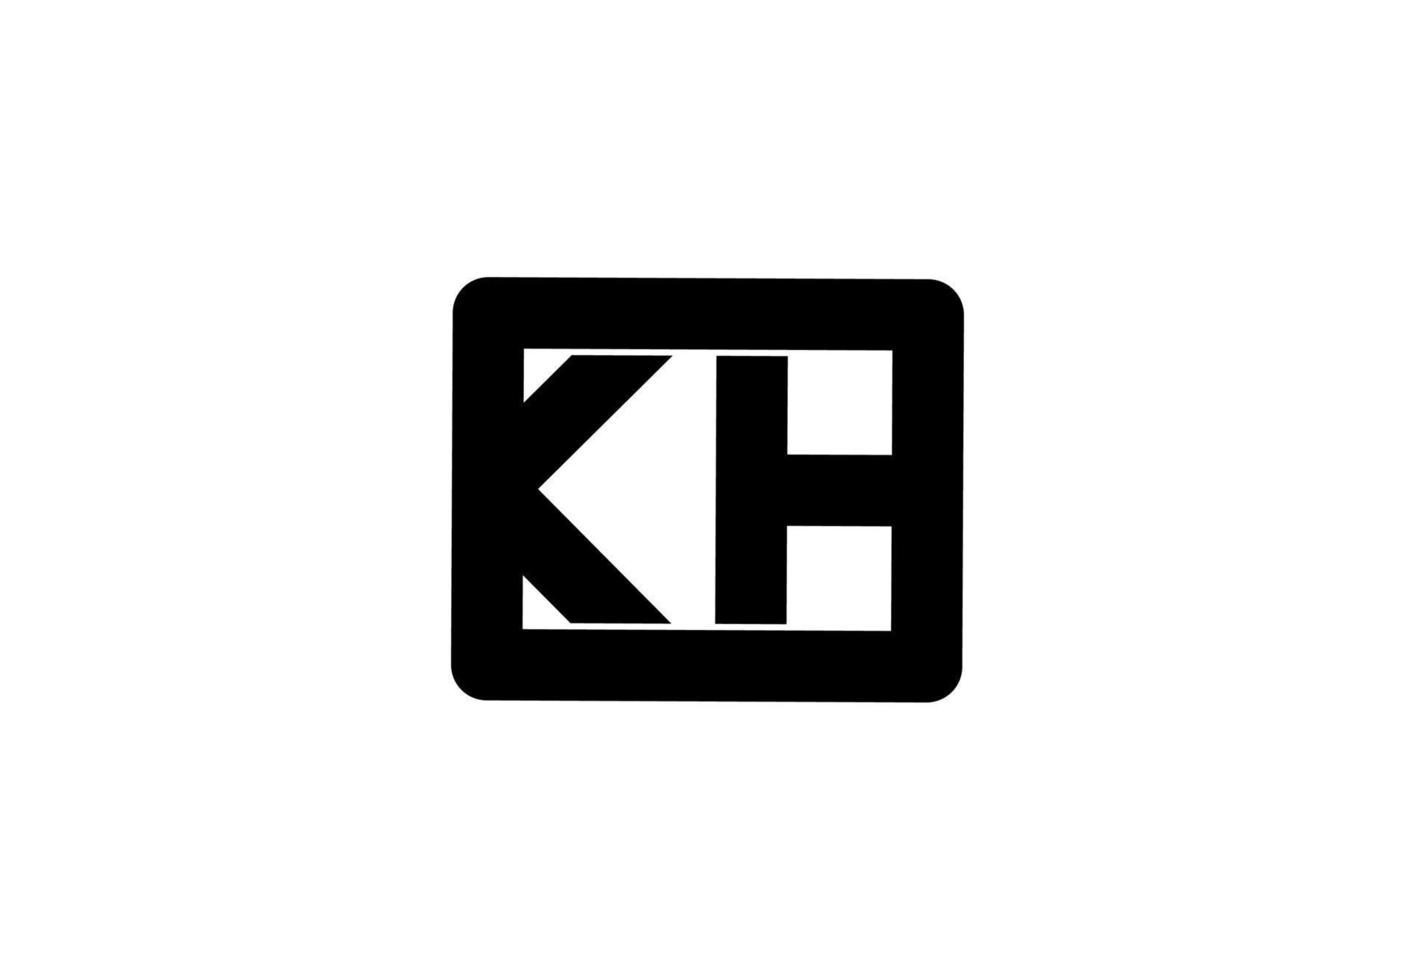 kh kh kh logotipo de la letra inicial vector